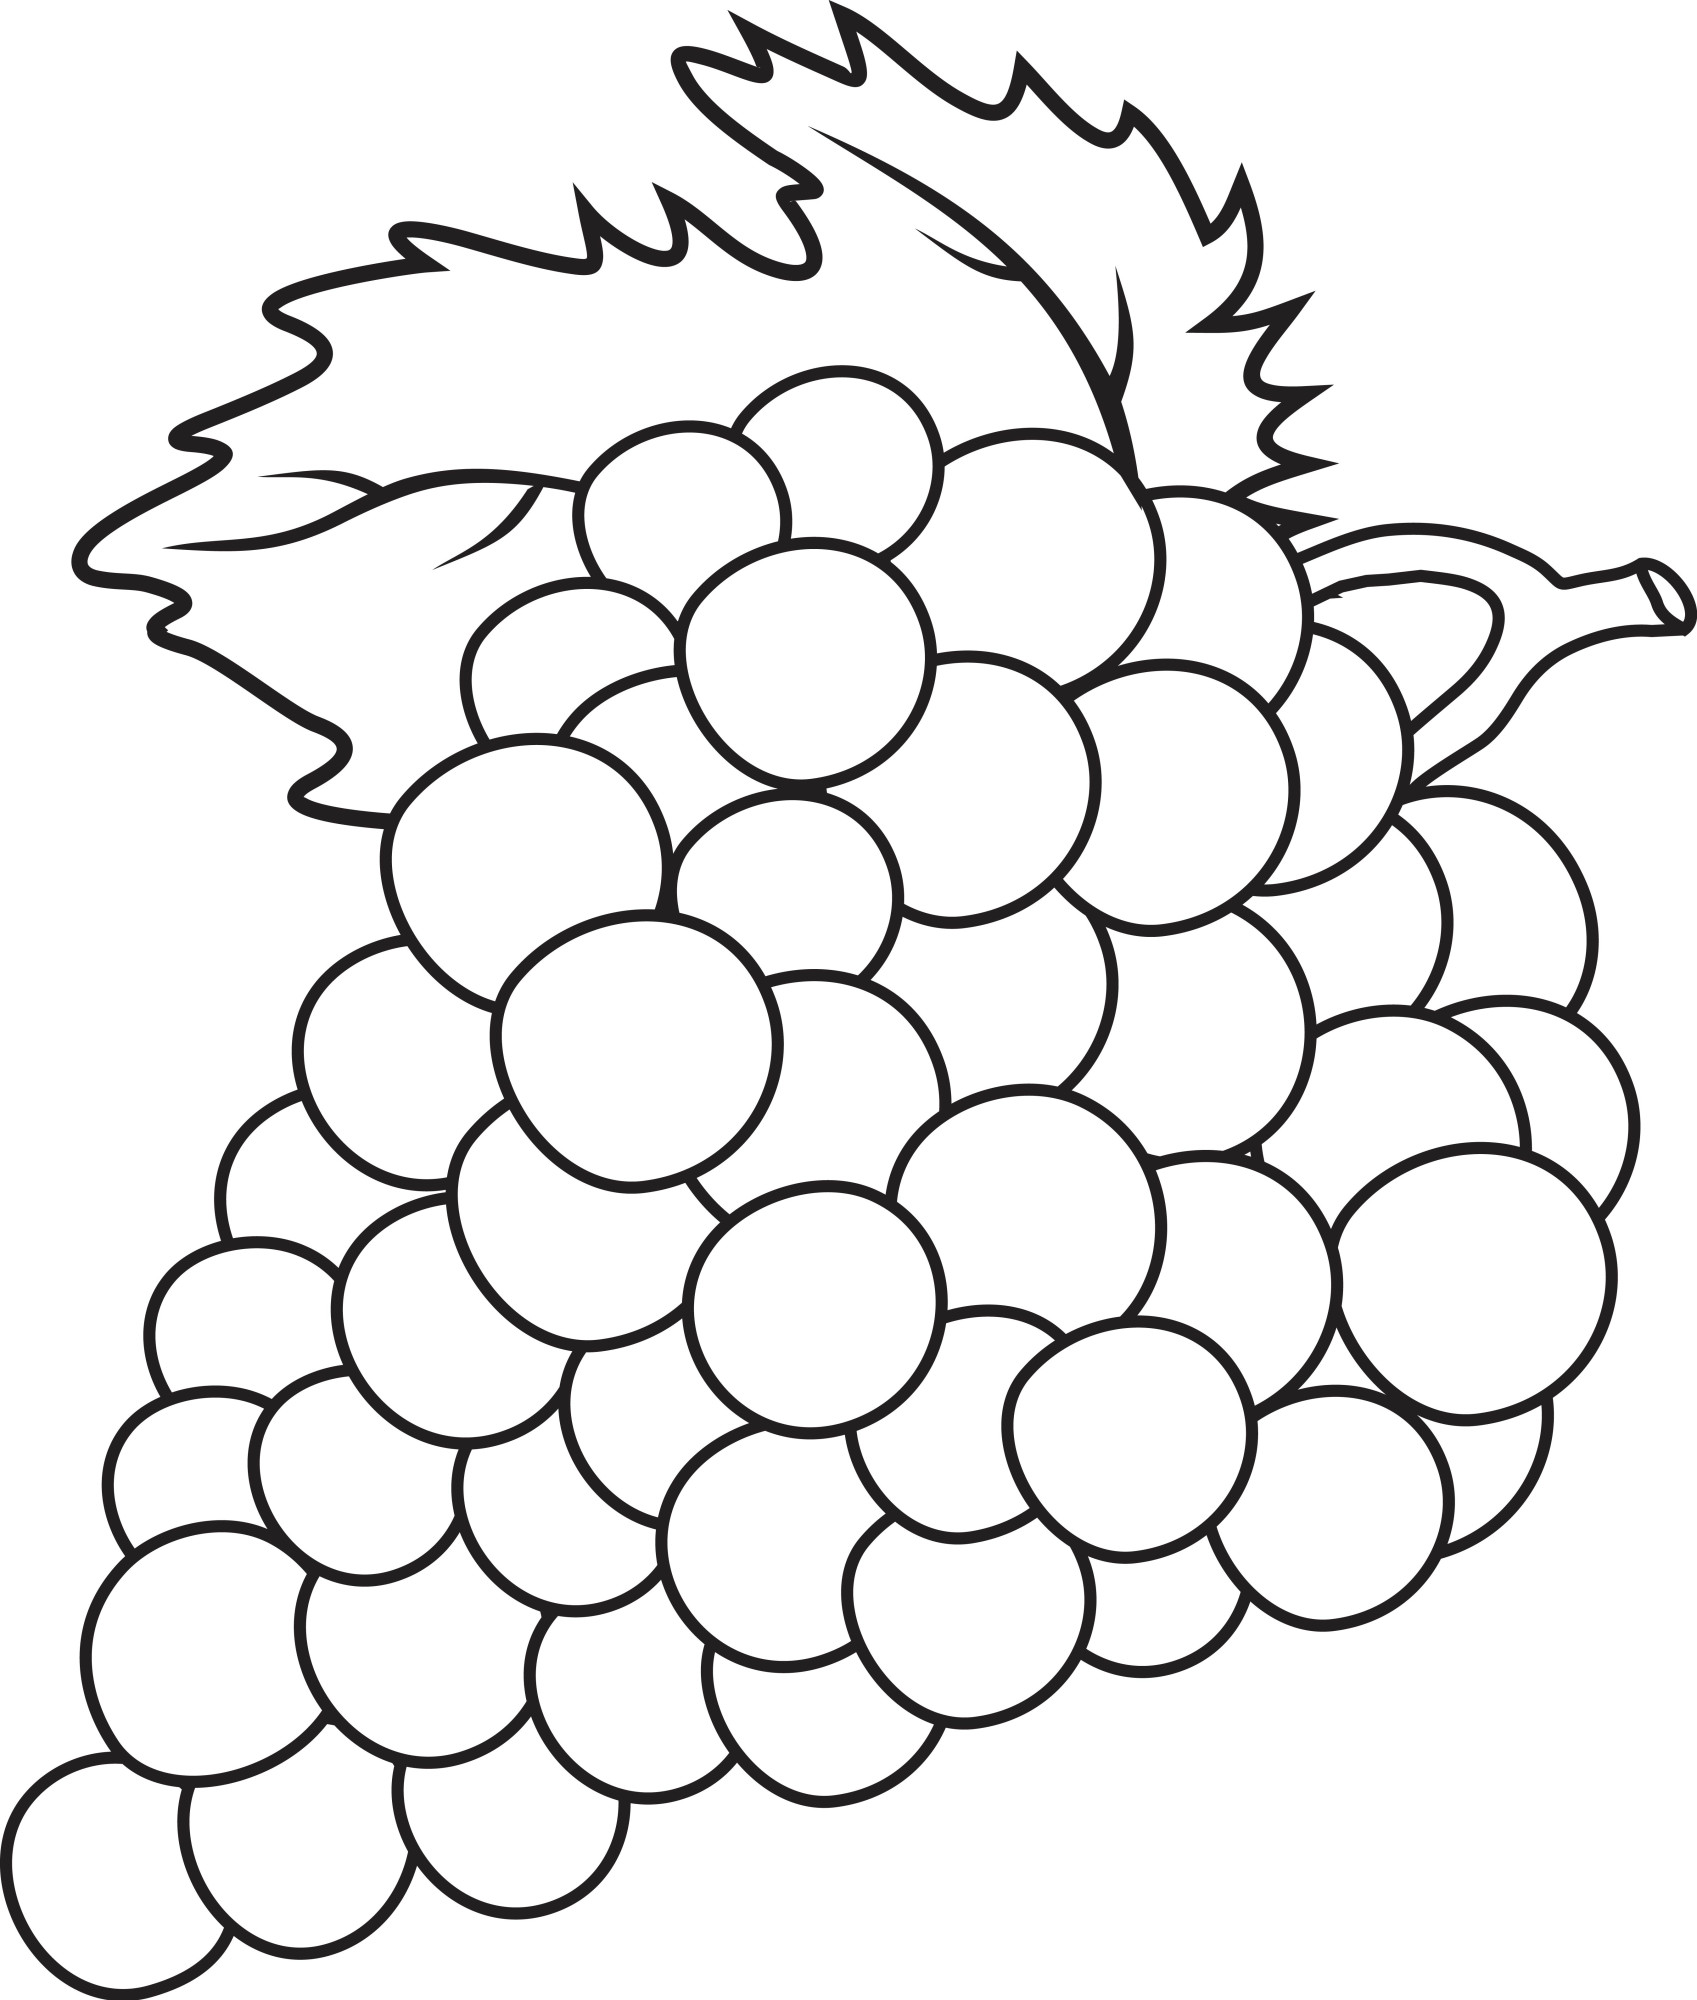 Раскраска для детей: гроздь винограда с листом